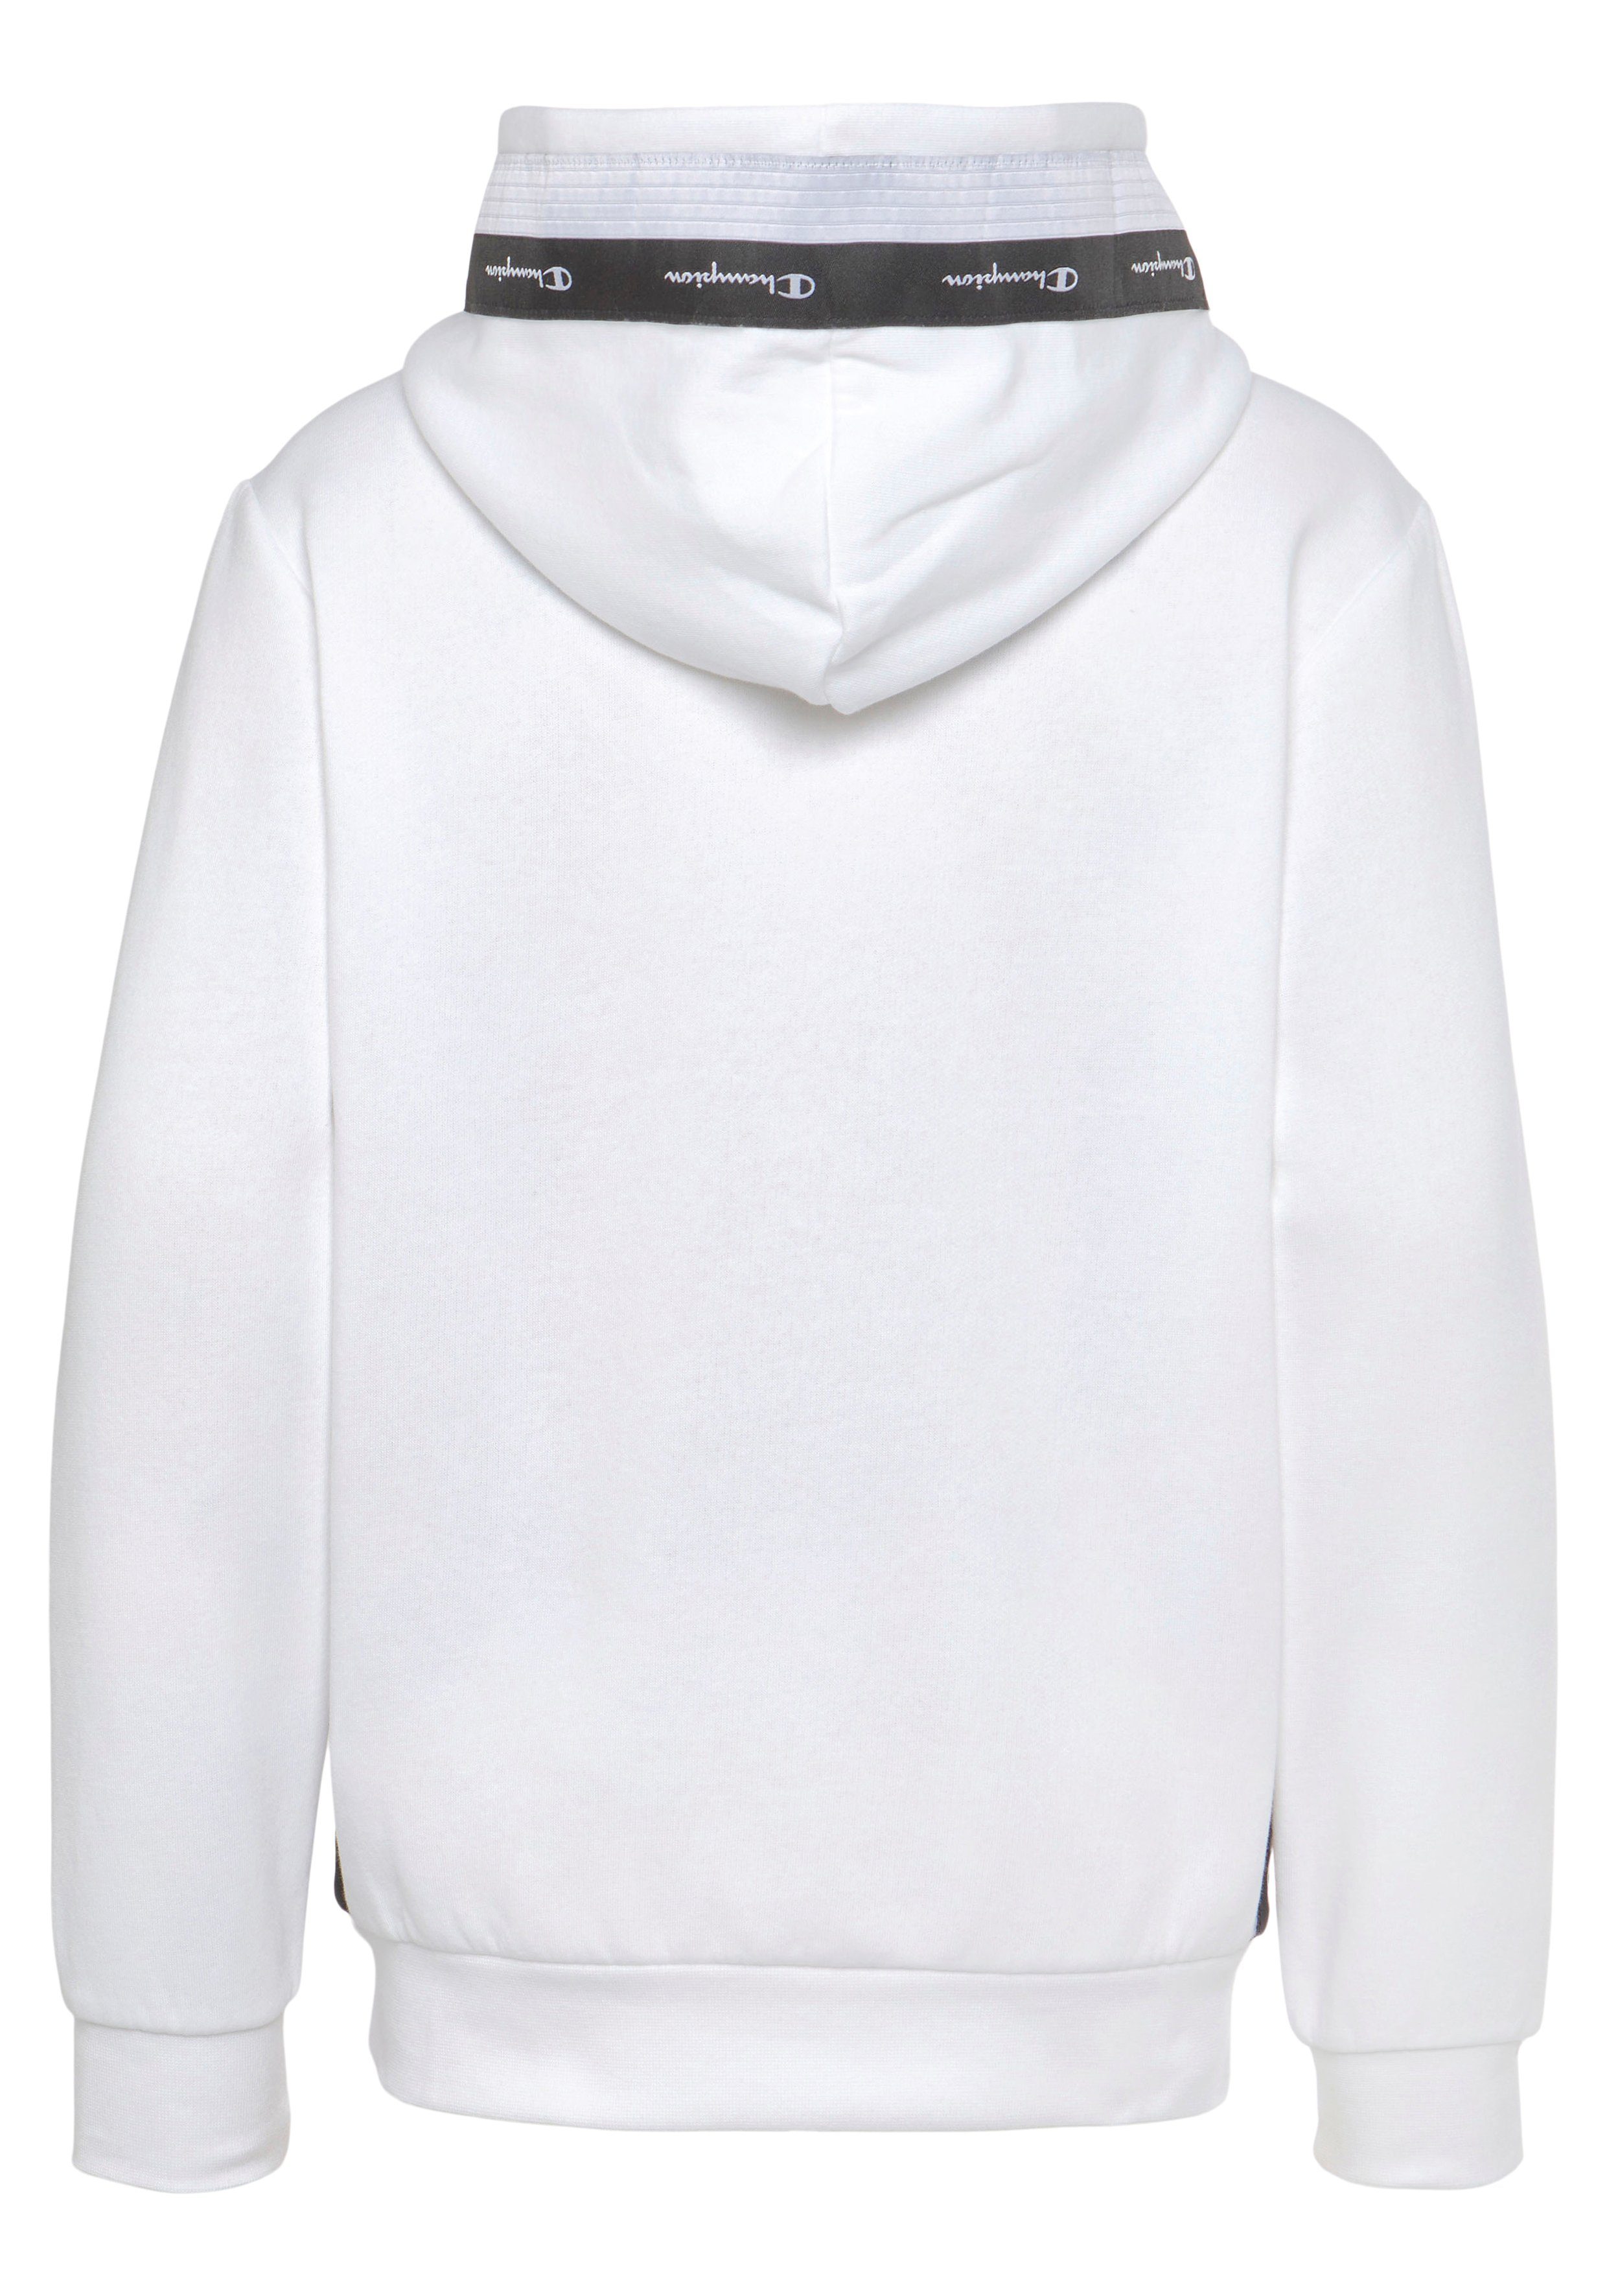 Sweatshirt - Kapuzensweatshirt Tape Hooded für Kinder weiß Champion